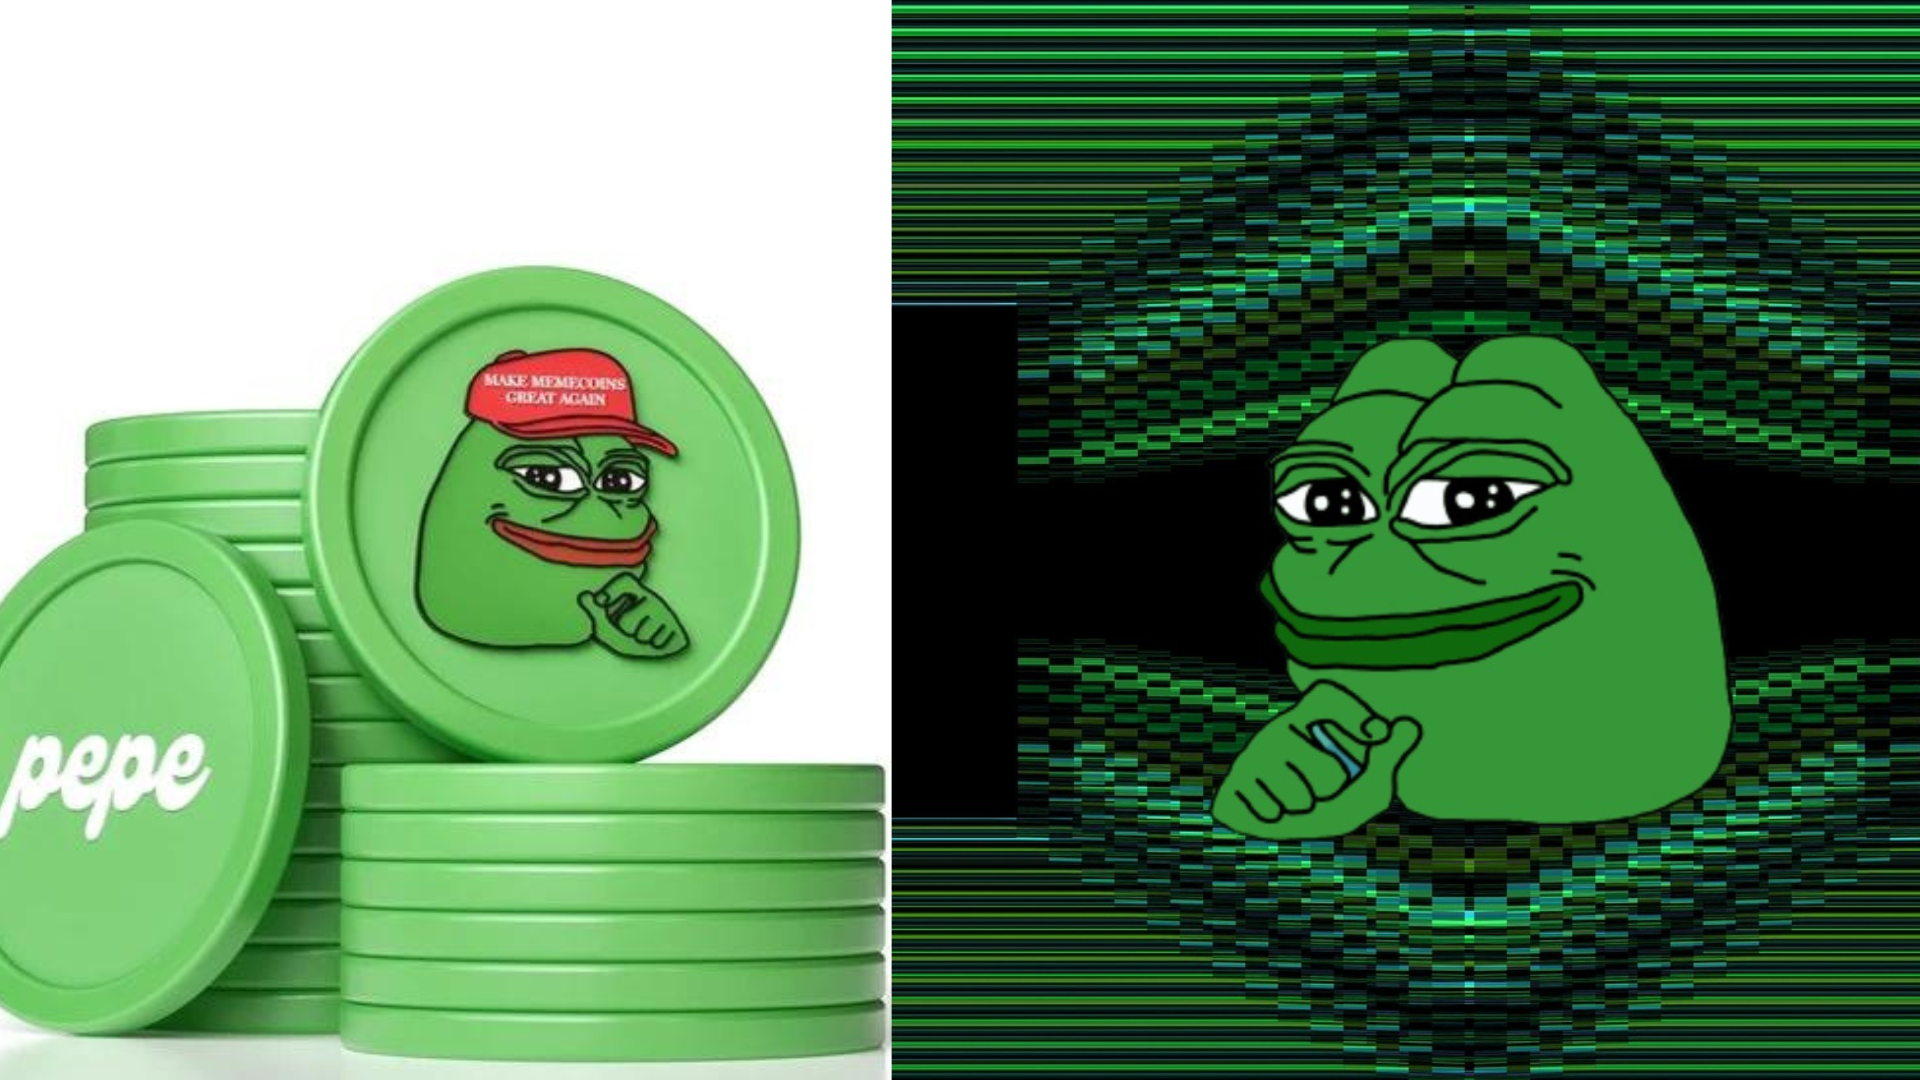 un'intelligenza artificiale generata da alcune monete verdi con il logo "Pepe la rana" sopra, come poster principale implicito della "guida all'acquisto"